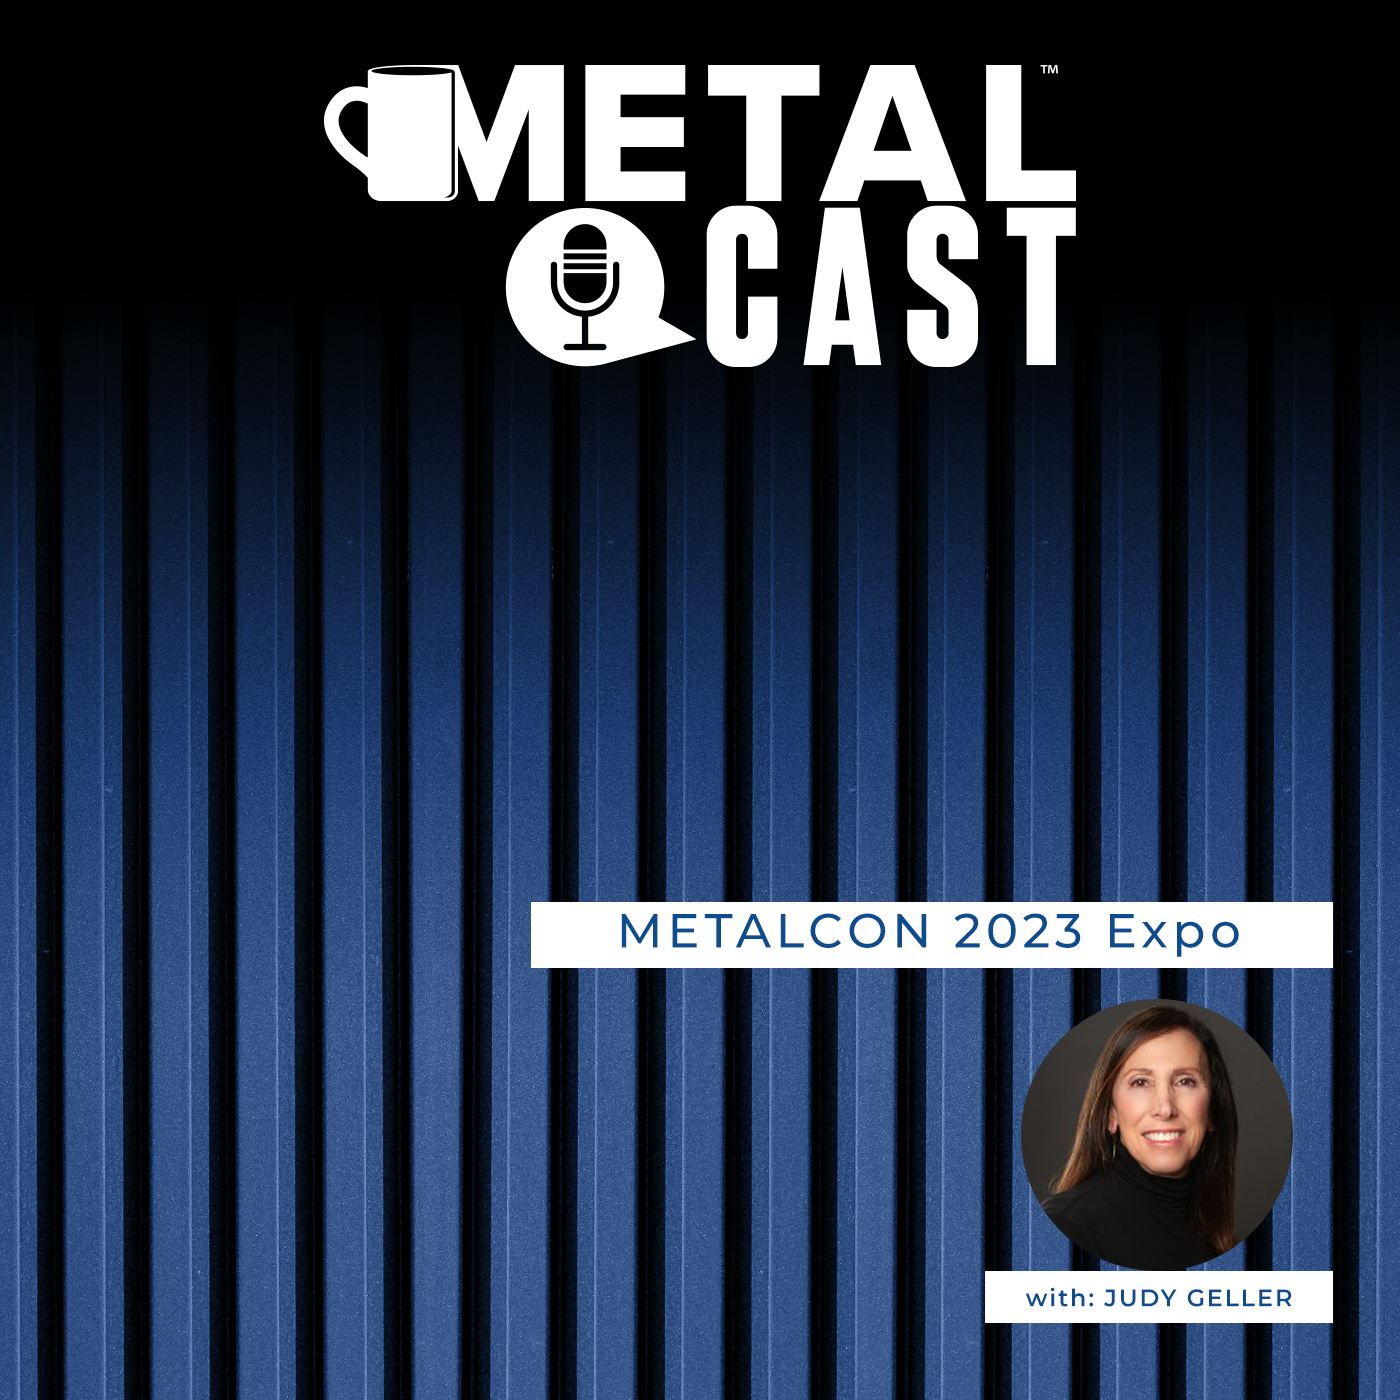 METALCON - MetalCast on Expo